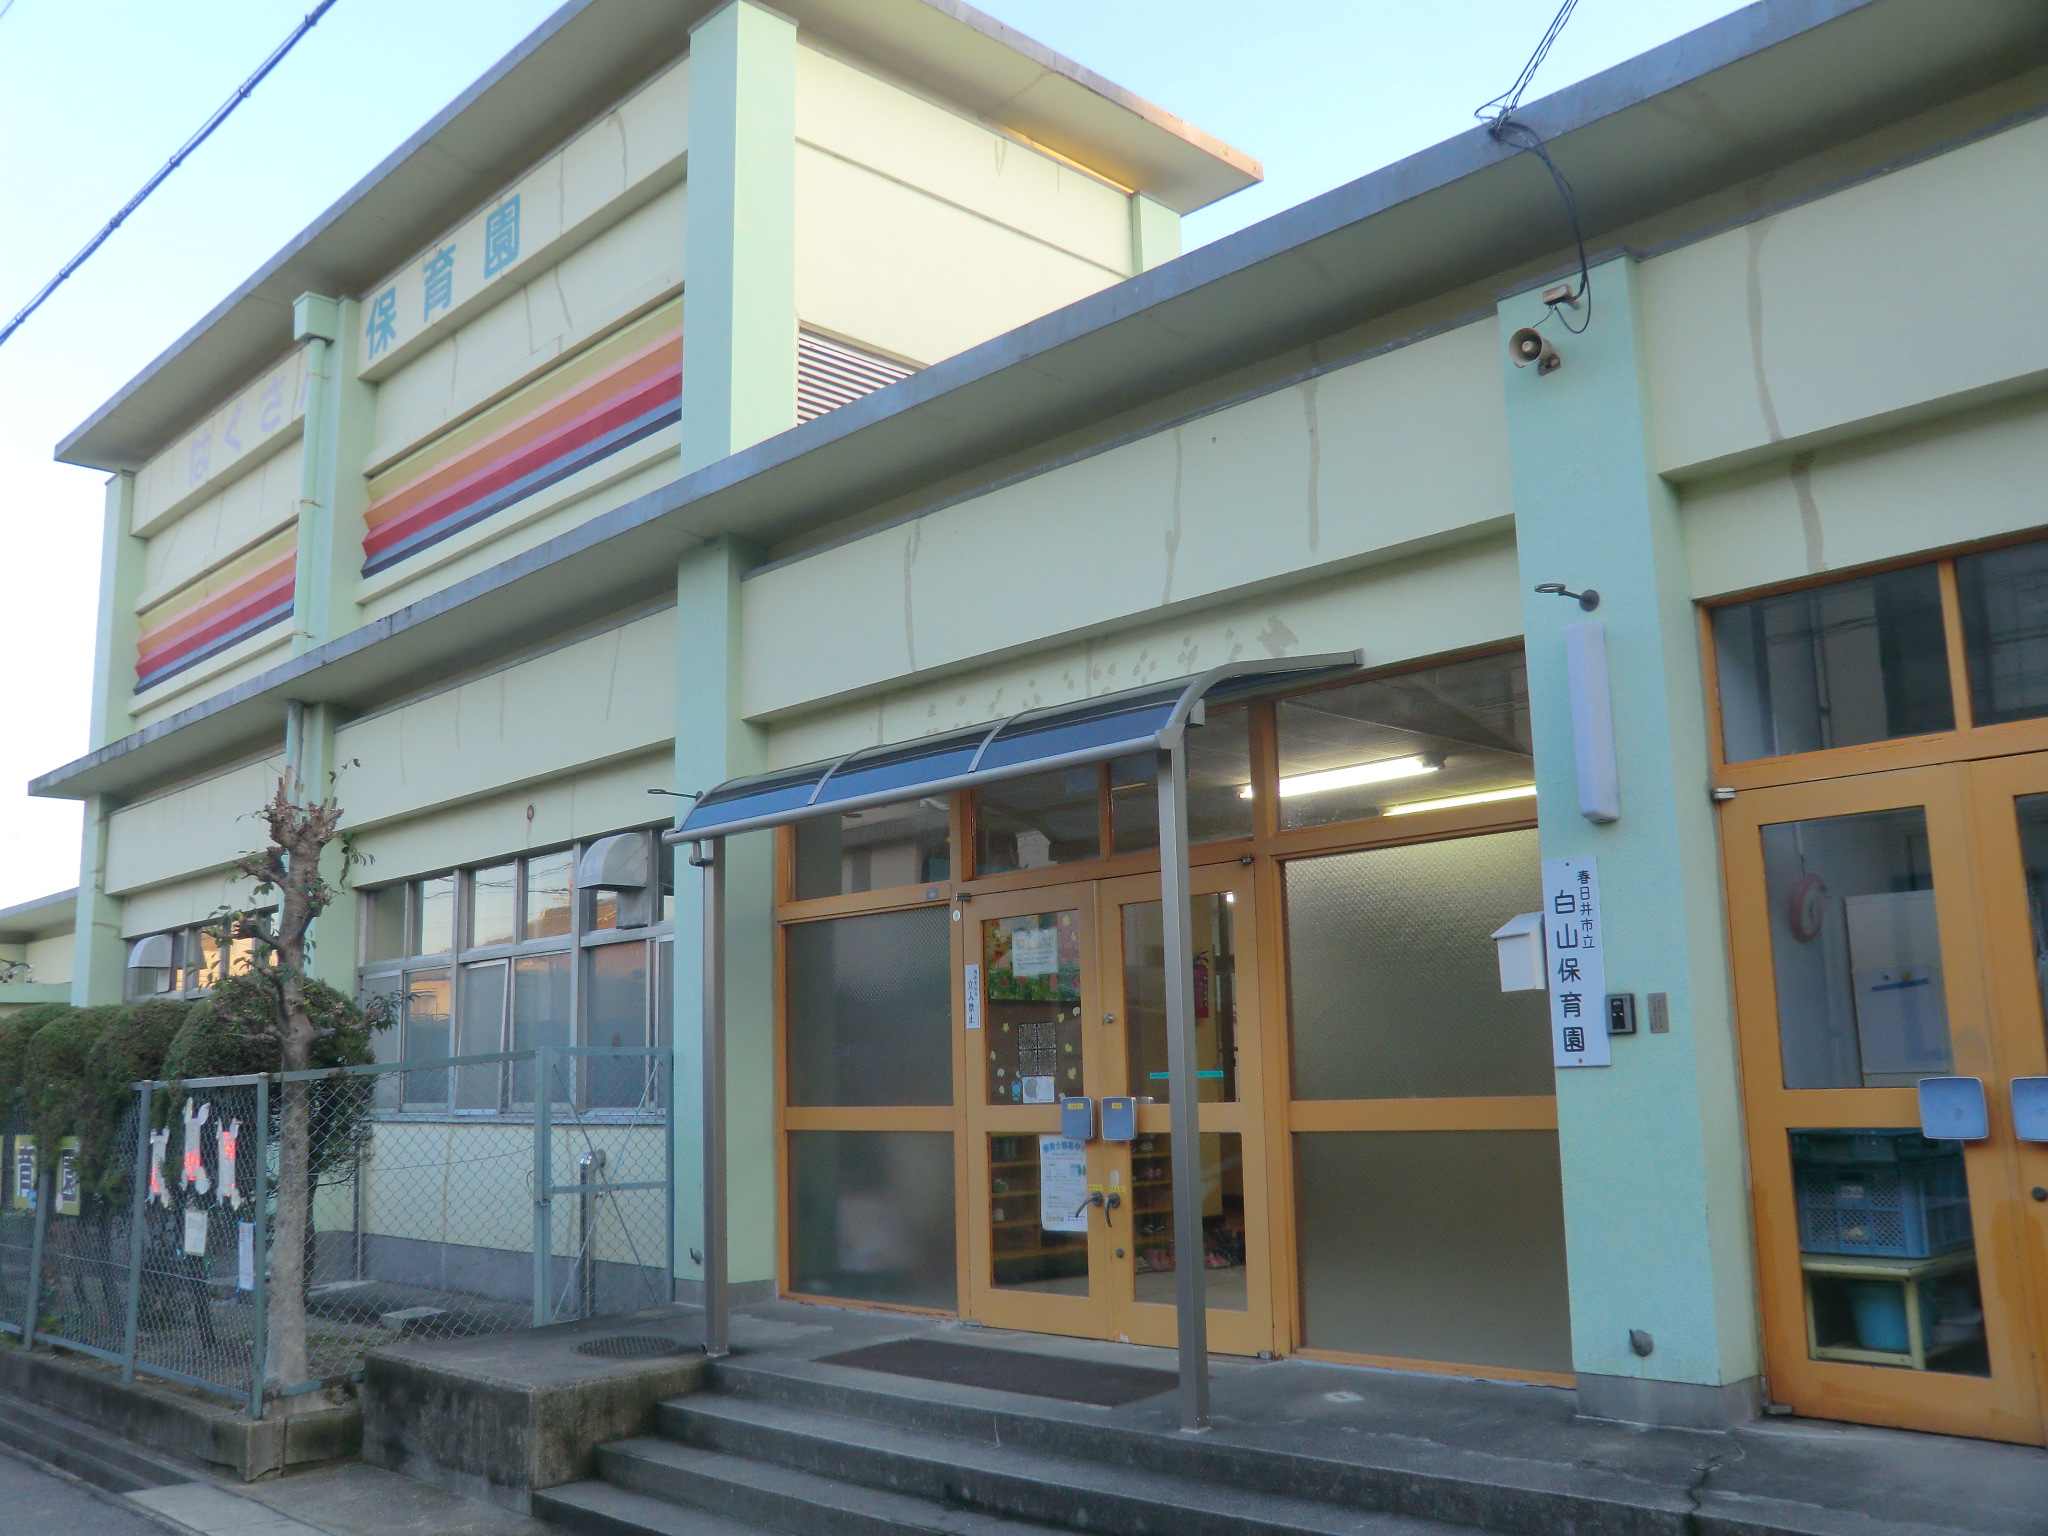 kindergarten ・ Nursery. Kasugai Municipal Hakusan nursery school (kindergarten ・ 663m to the nursery)